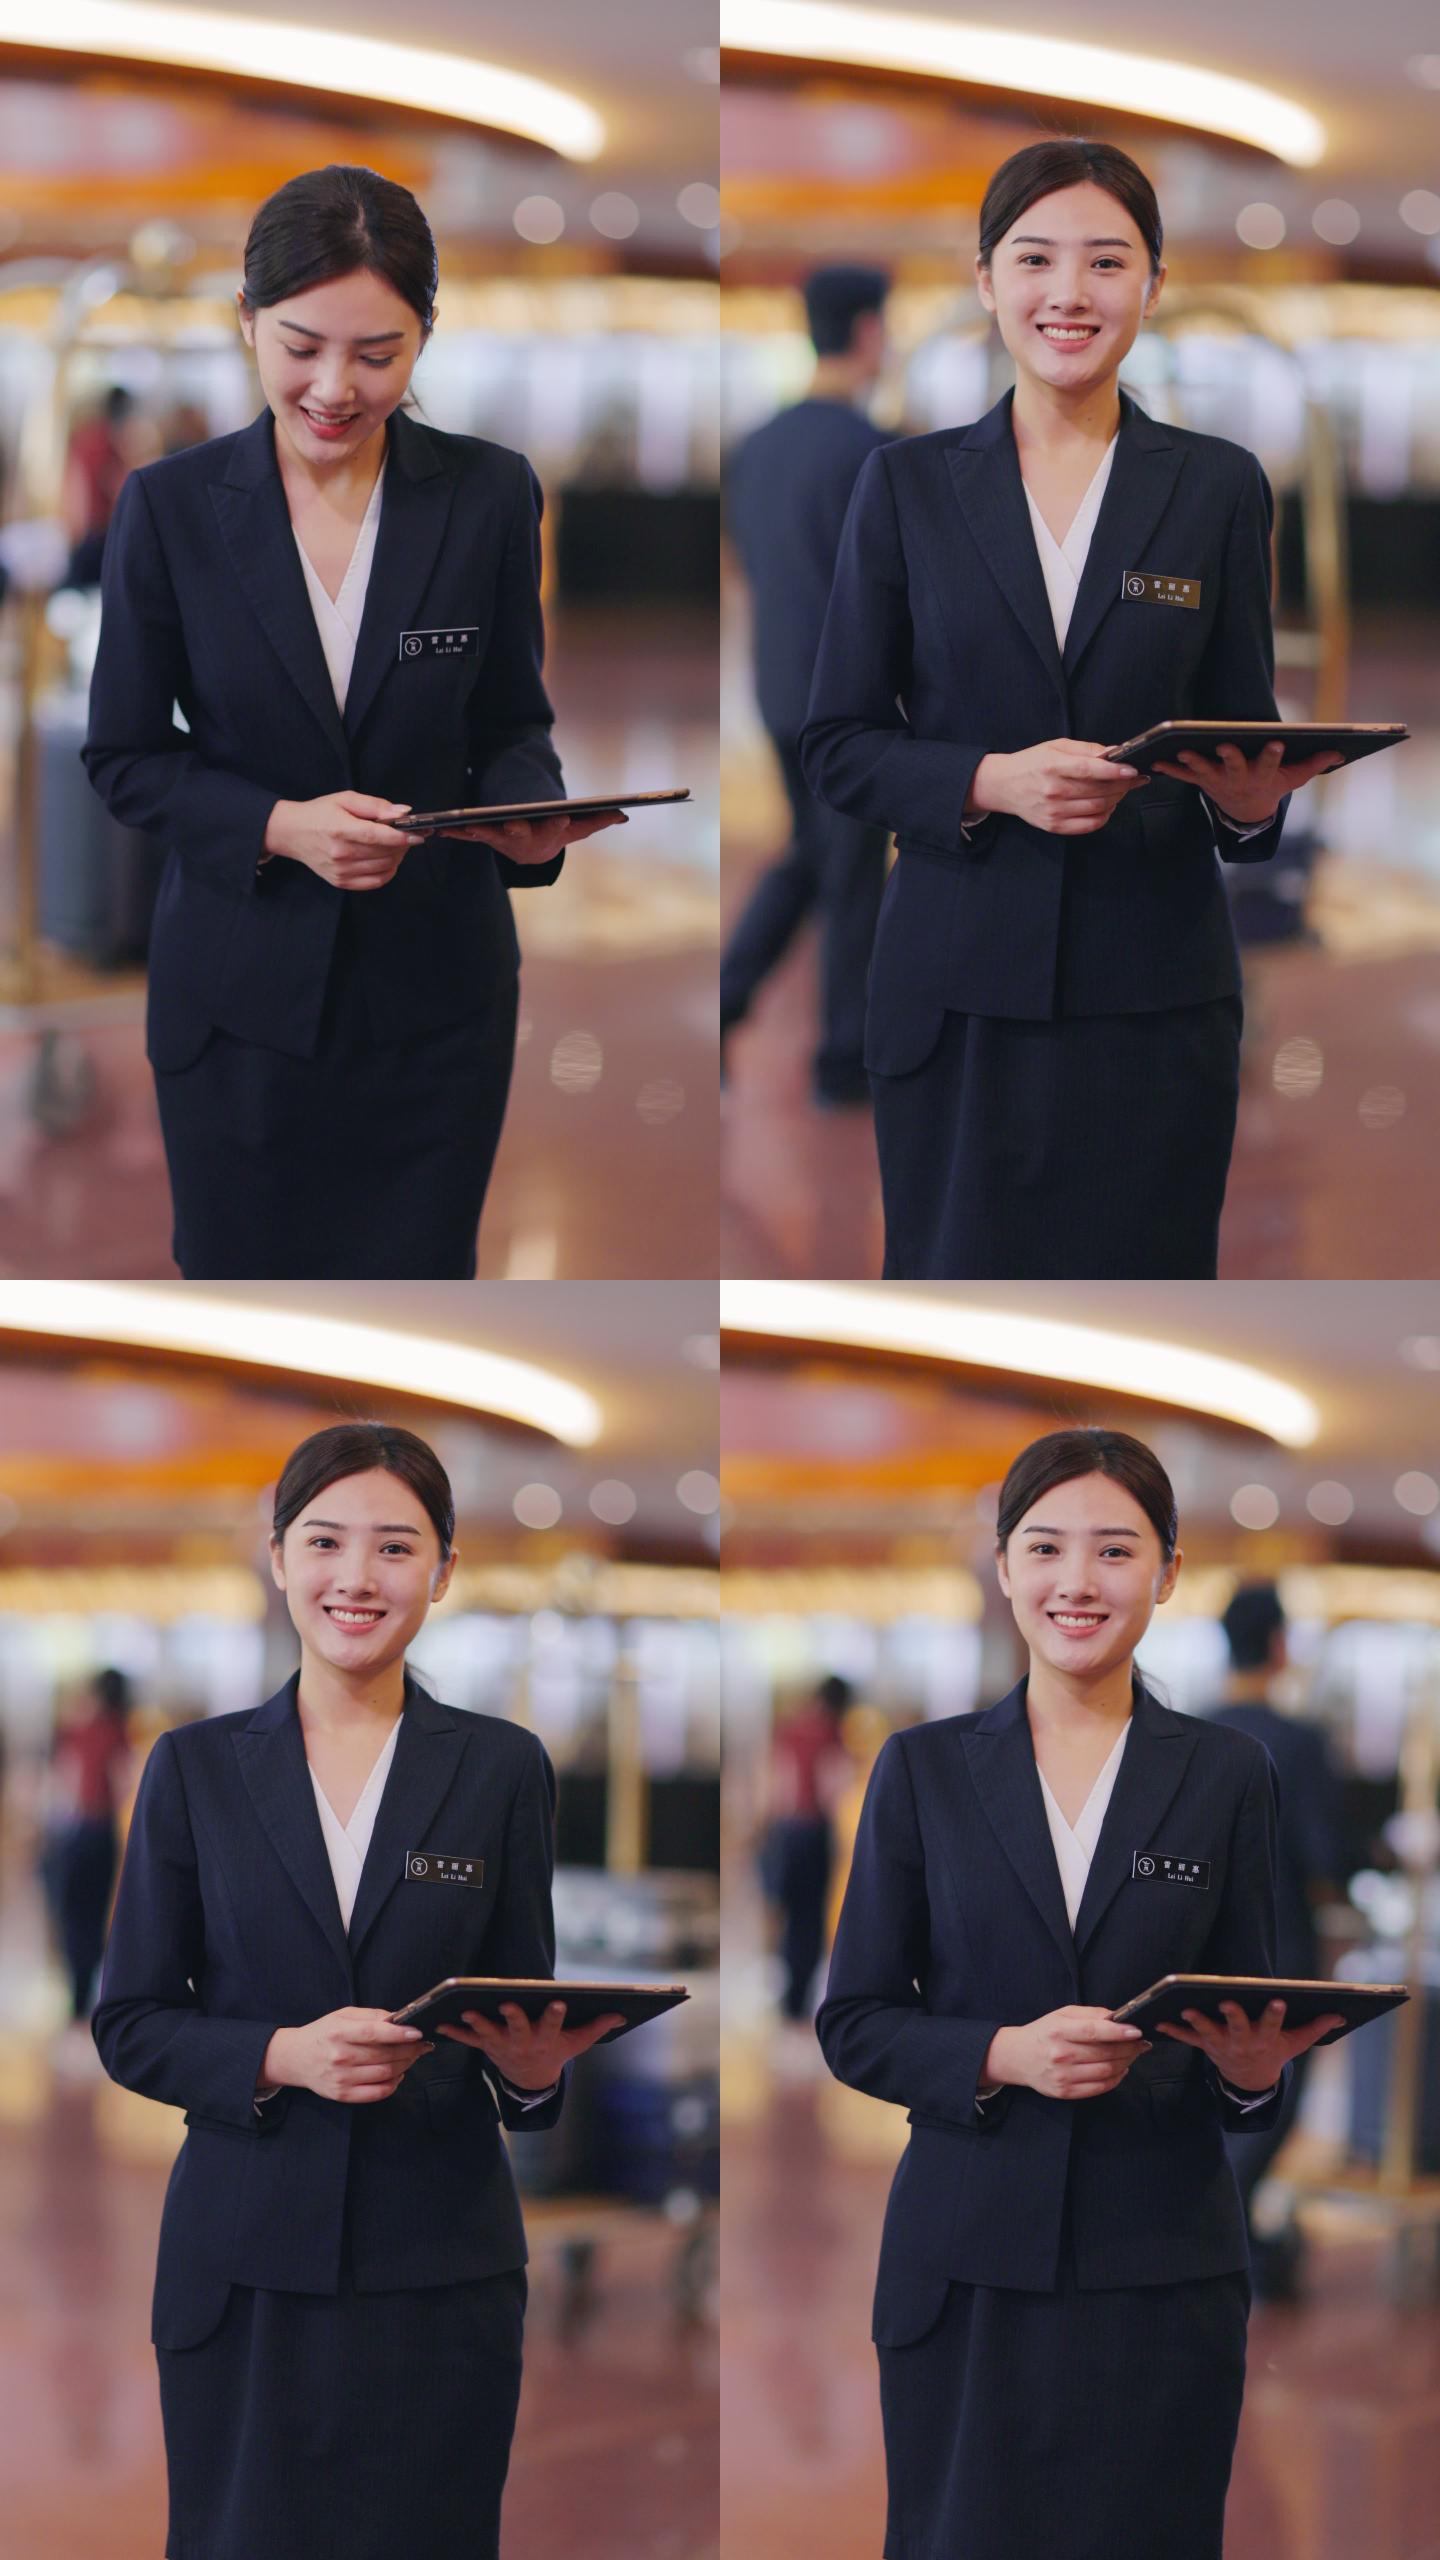 酒店服务人员形象笑容笑脸礼貌迎接礼仪宣传